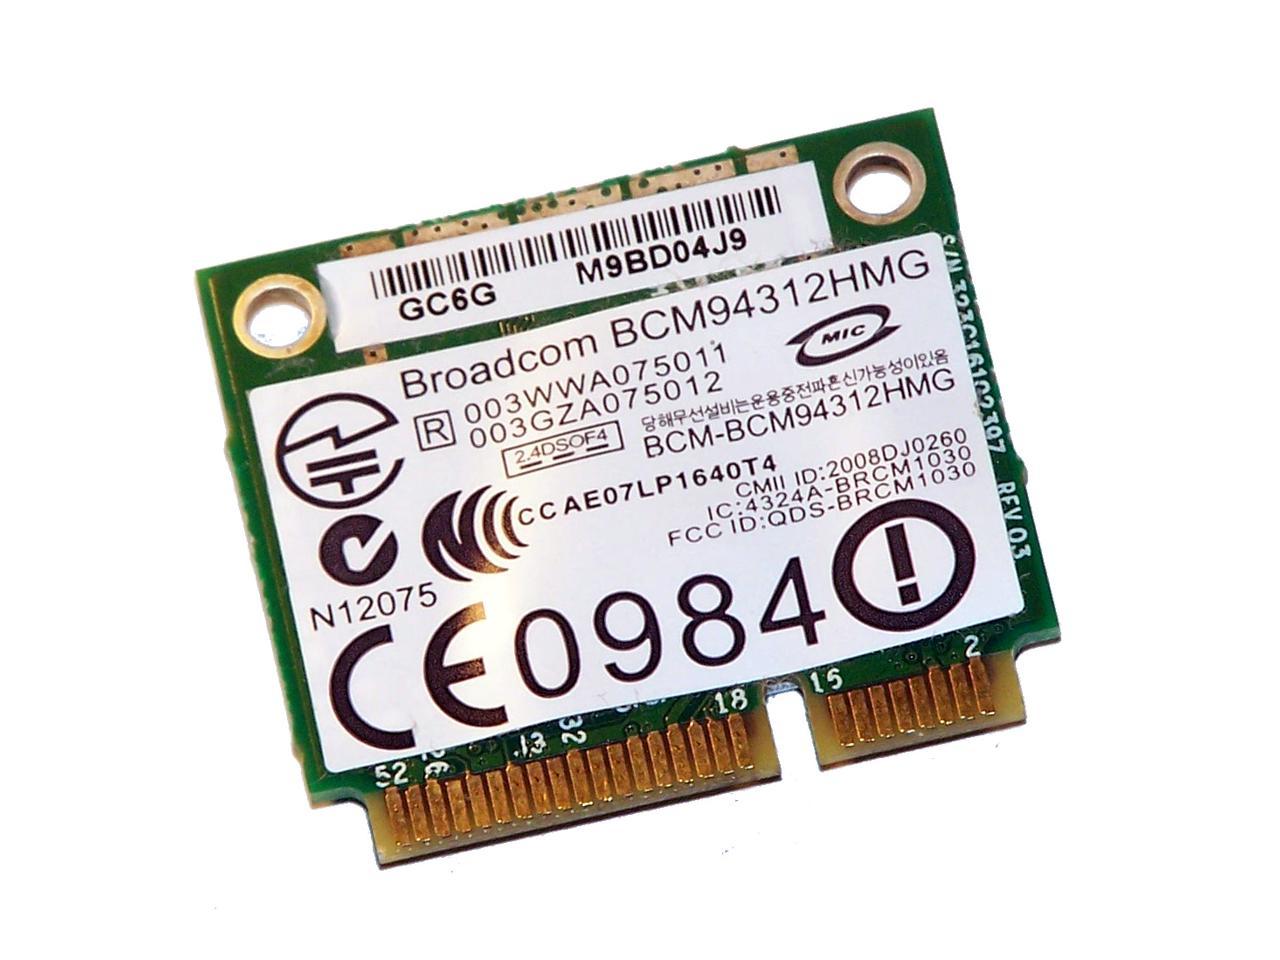 NEW ORIGINAL Dell DW1397 Broadcom 4312 KW770 Wireless Card WLAN WIFi FR016 